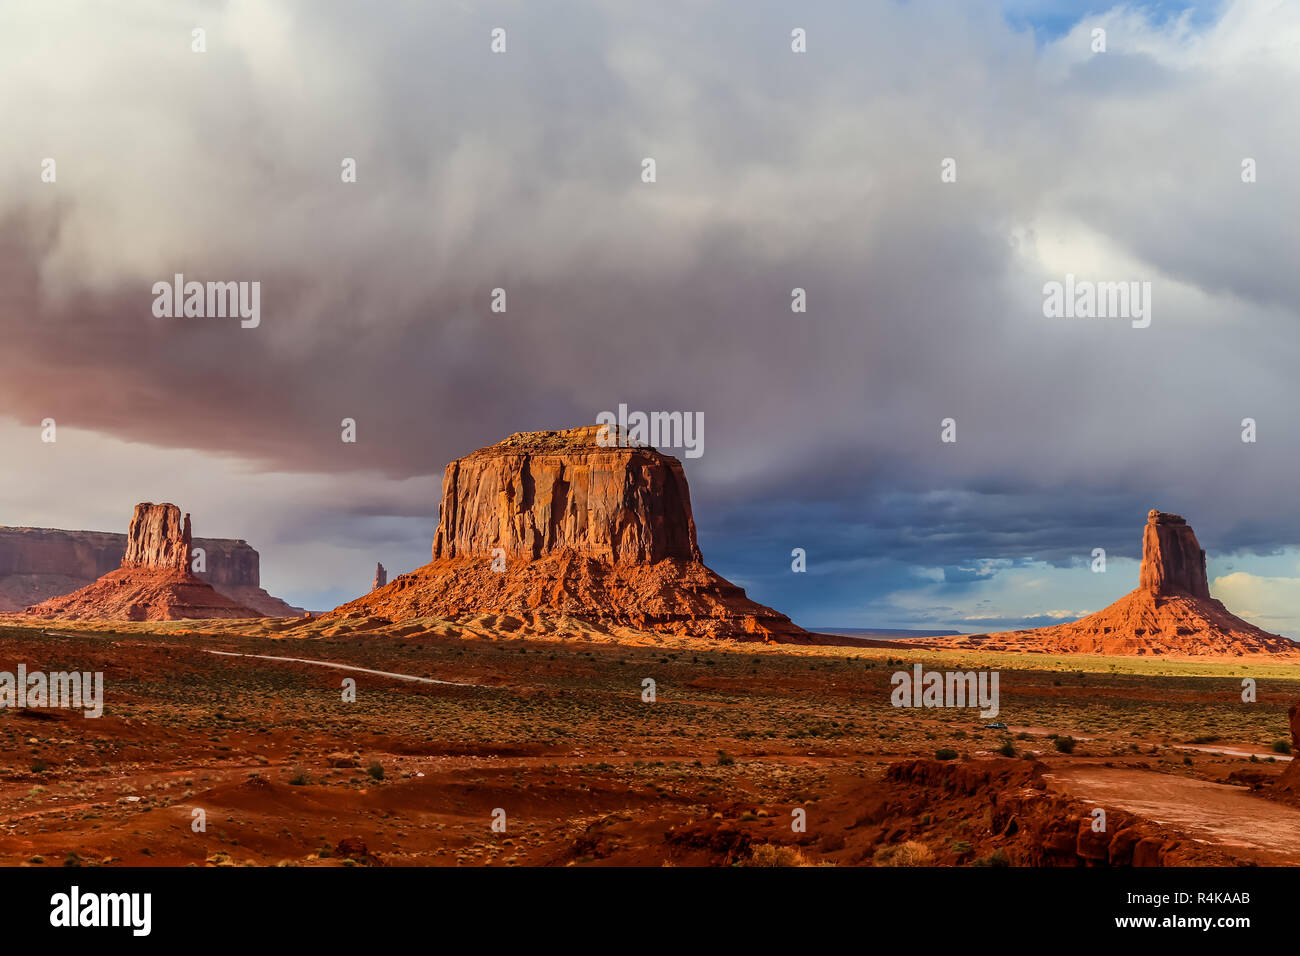 Arenaria buttes con le nuvole con un drammatico cielo tempestoso nel deserto di oljato monument valley alla frontiera in Arizona e utah nel west americano Foto Stock